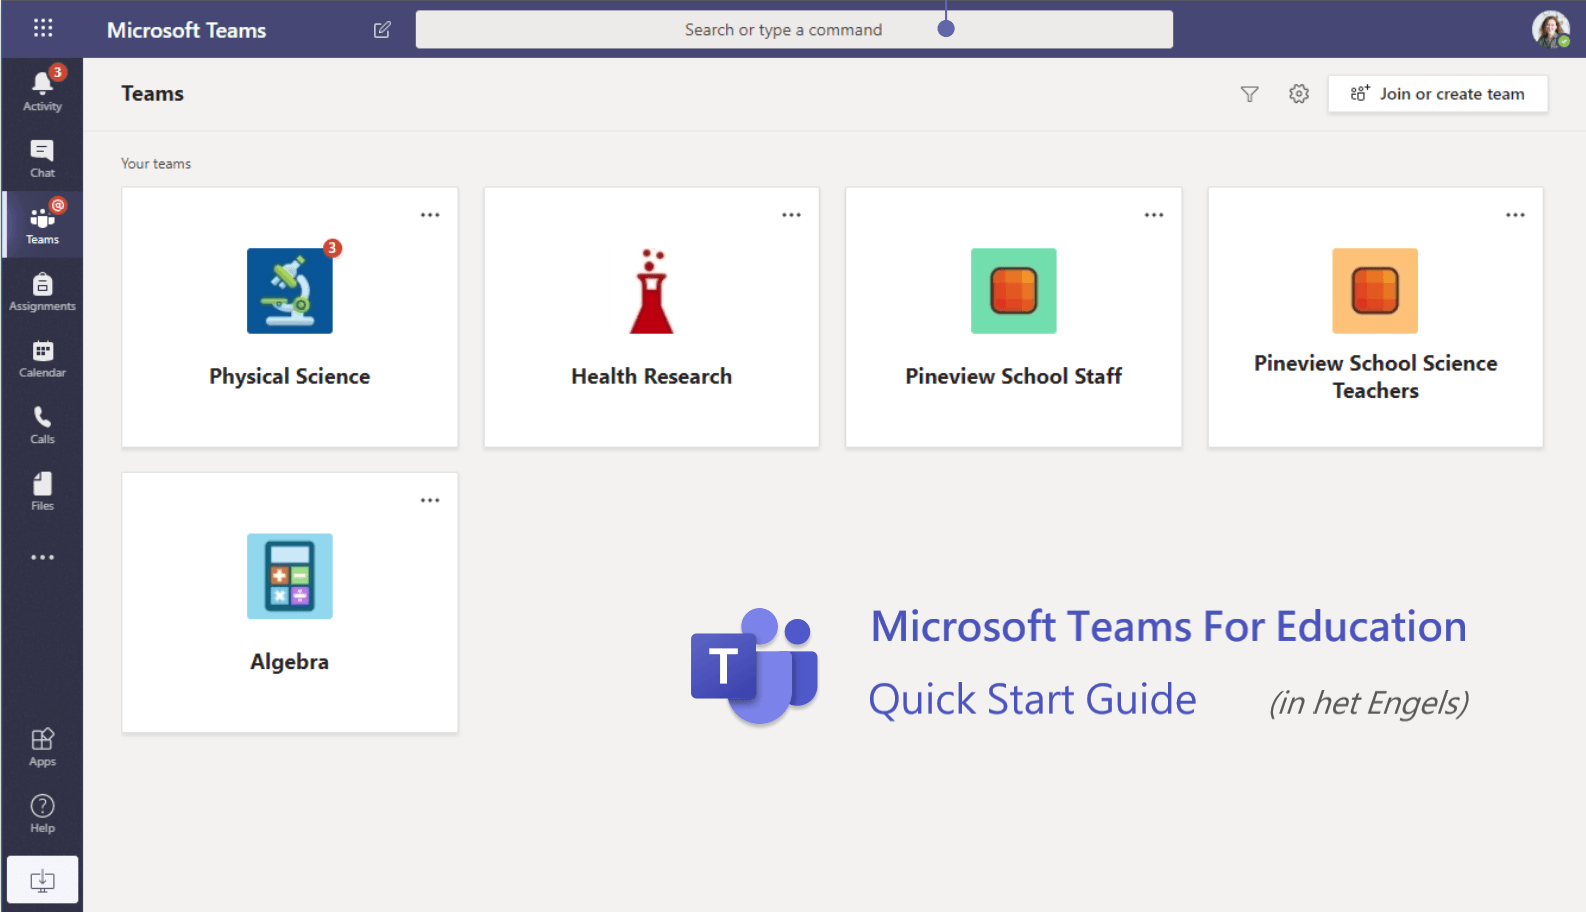 Download de Quick Start Guide voor Microsoft Teams voor het onderwijs in het Engels